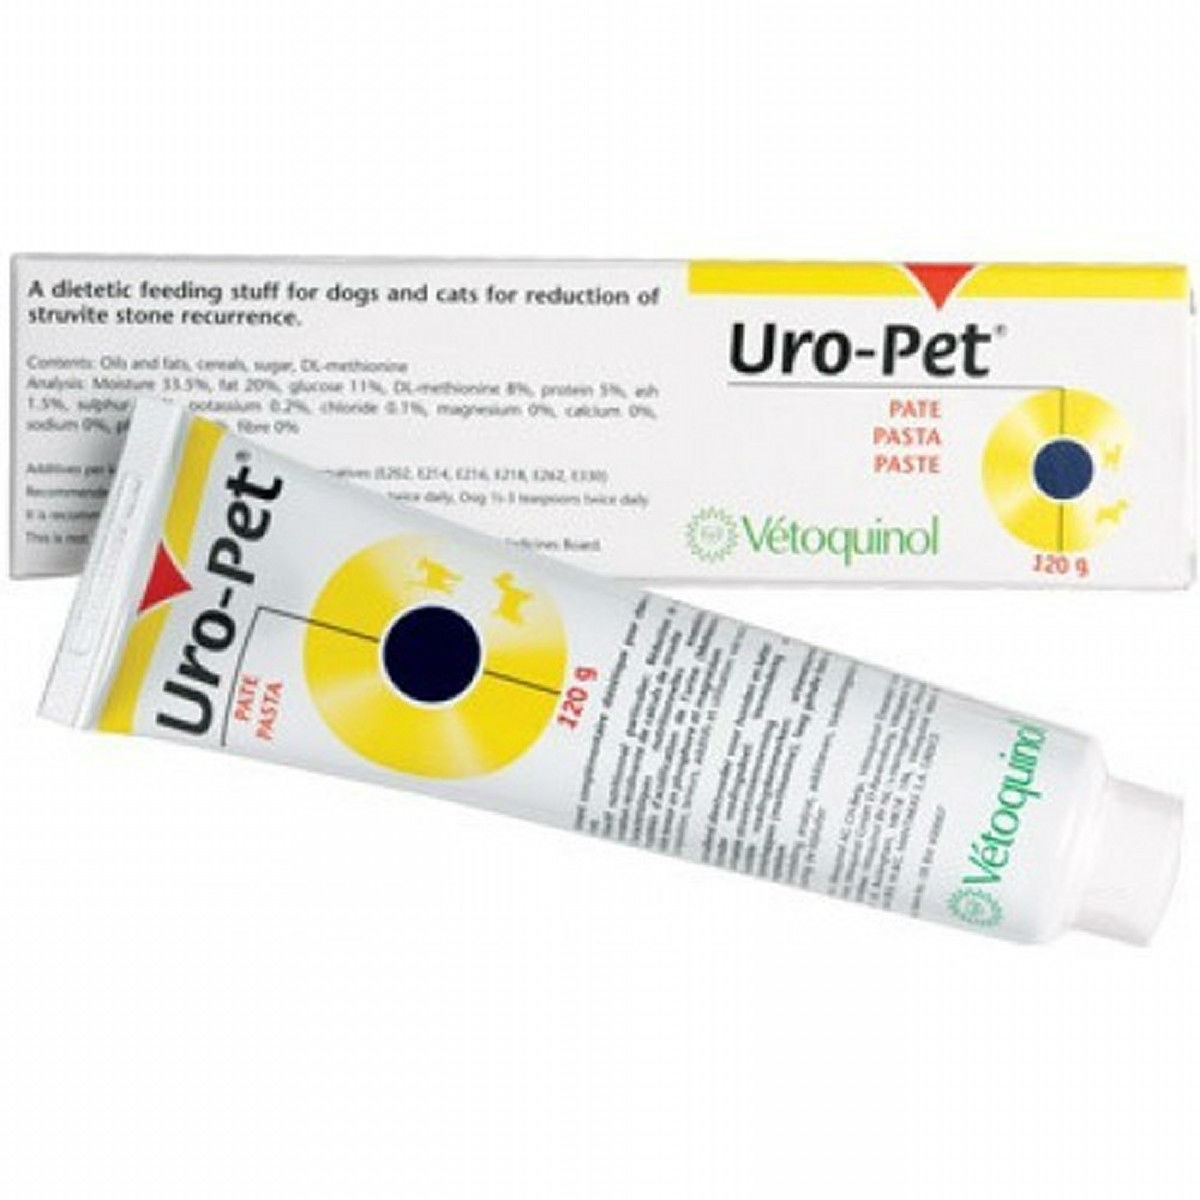 Uro-pet Umbilical Paste Prevention 120g